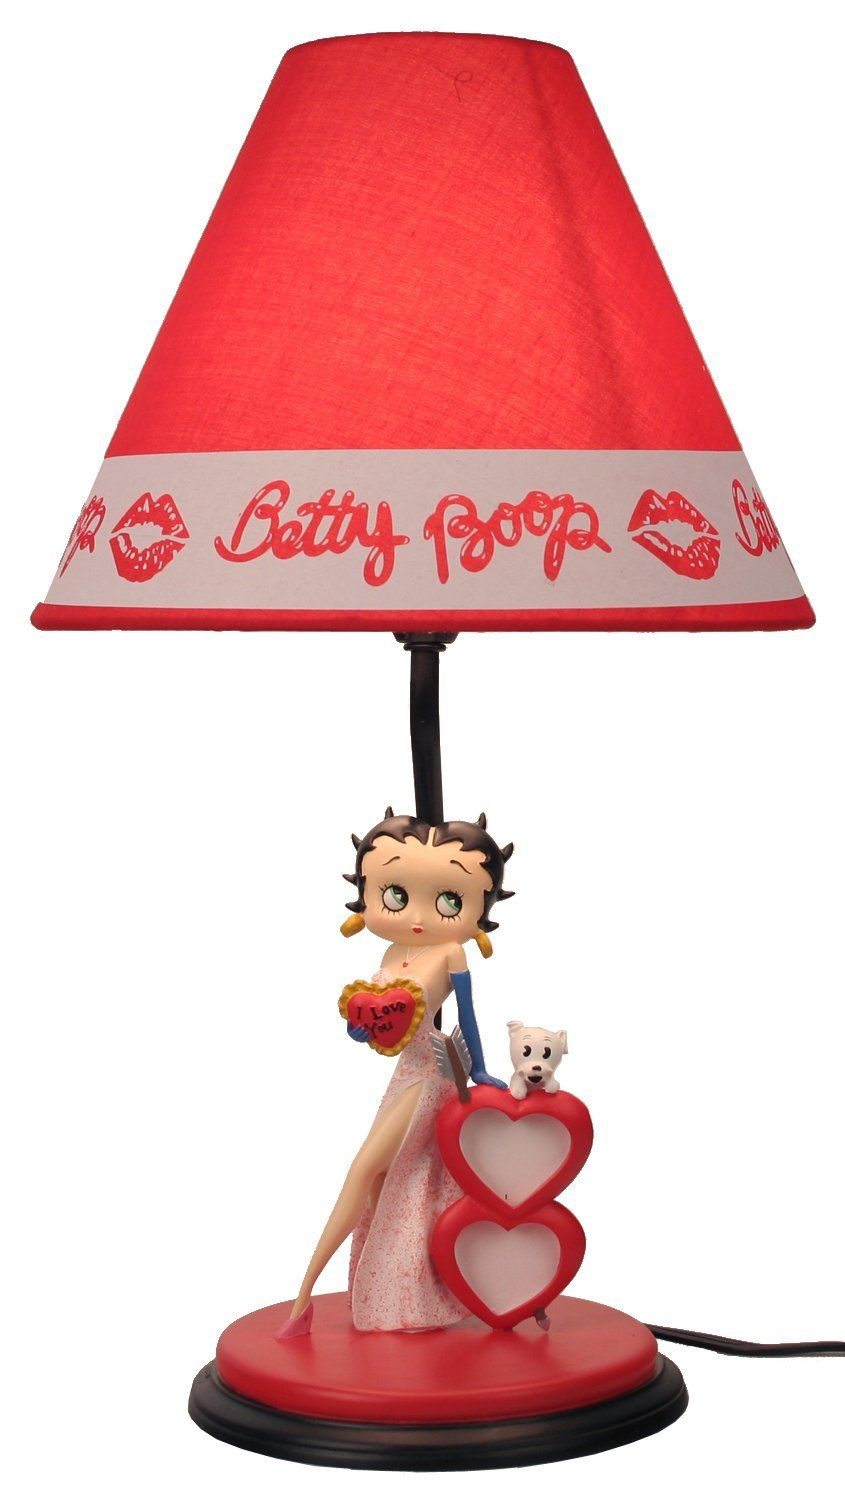 48CM BETTY BOOP HIDE & SEEK LAMP RED DRESS COLLECTABLE FIGURINE LAMP 